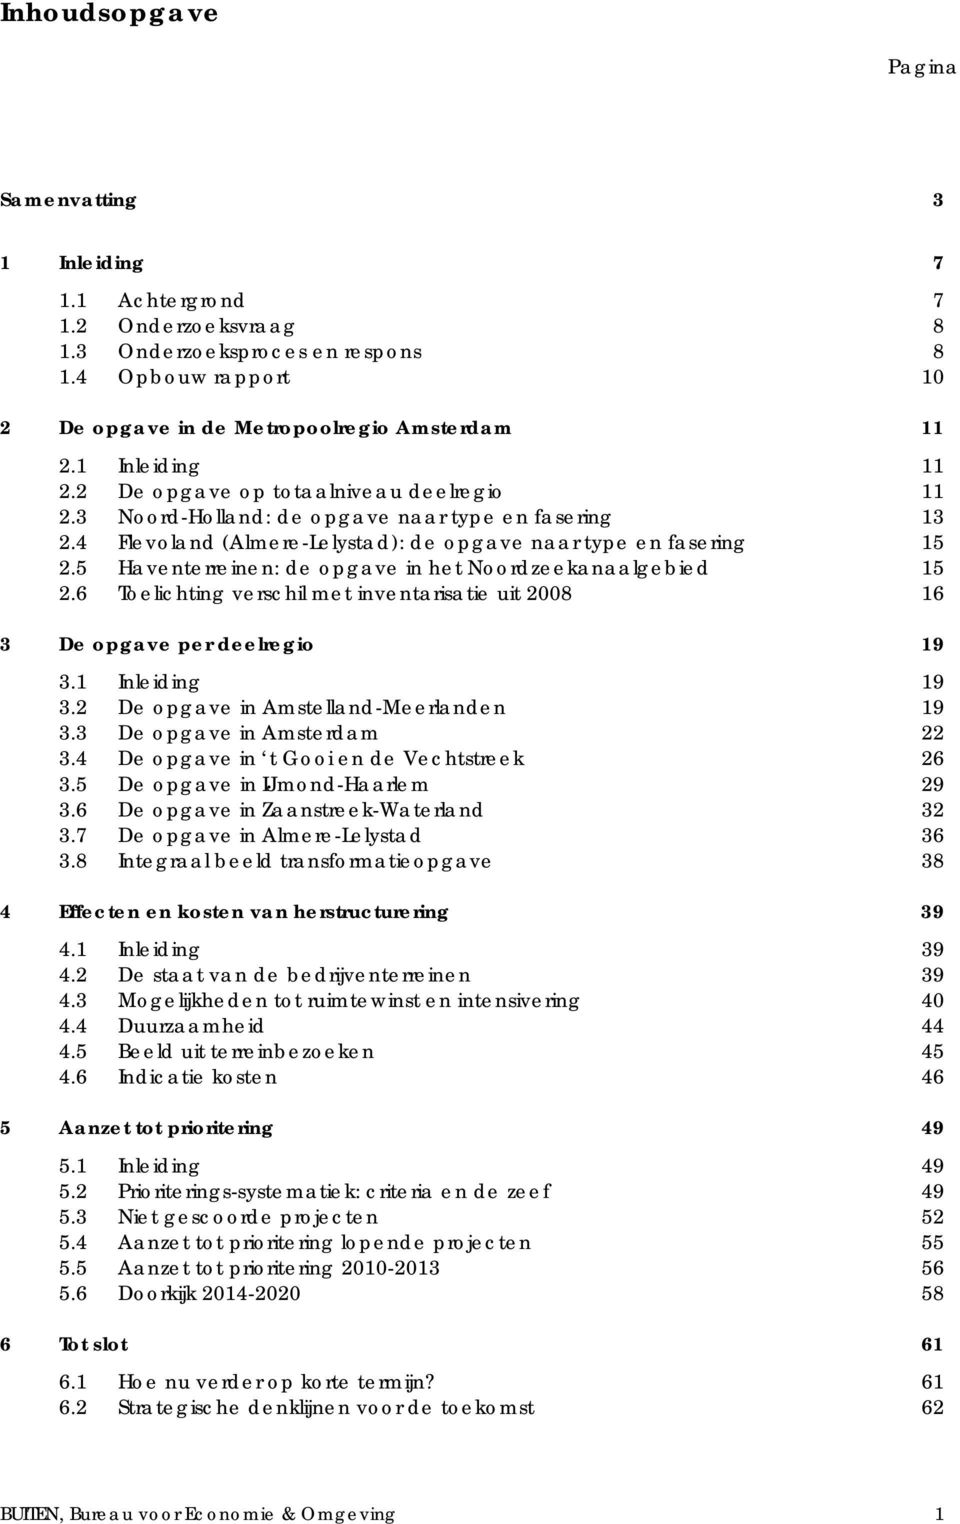 5 Haventerreinen: de opgave in het Noordzeekanaalgebied 15 2.6 Toelichting verschil met inventarisatie uit 2008 16 3 De opgave per deelregio 19 3.1 Inleiding 19 3.